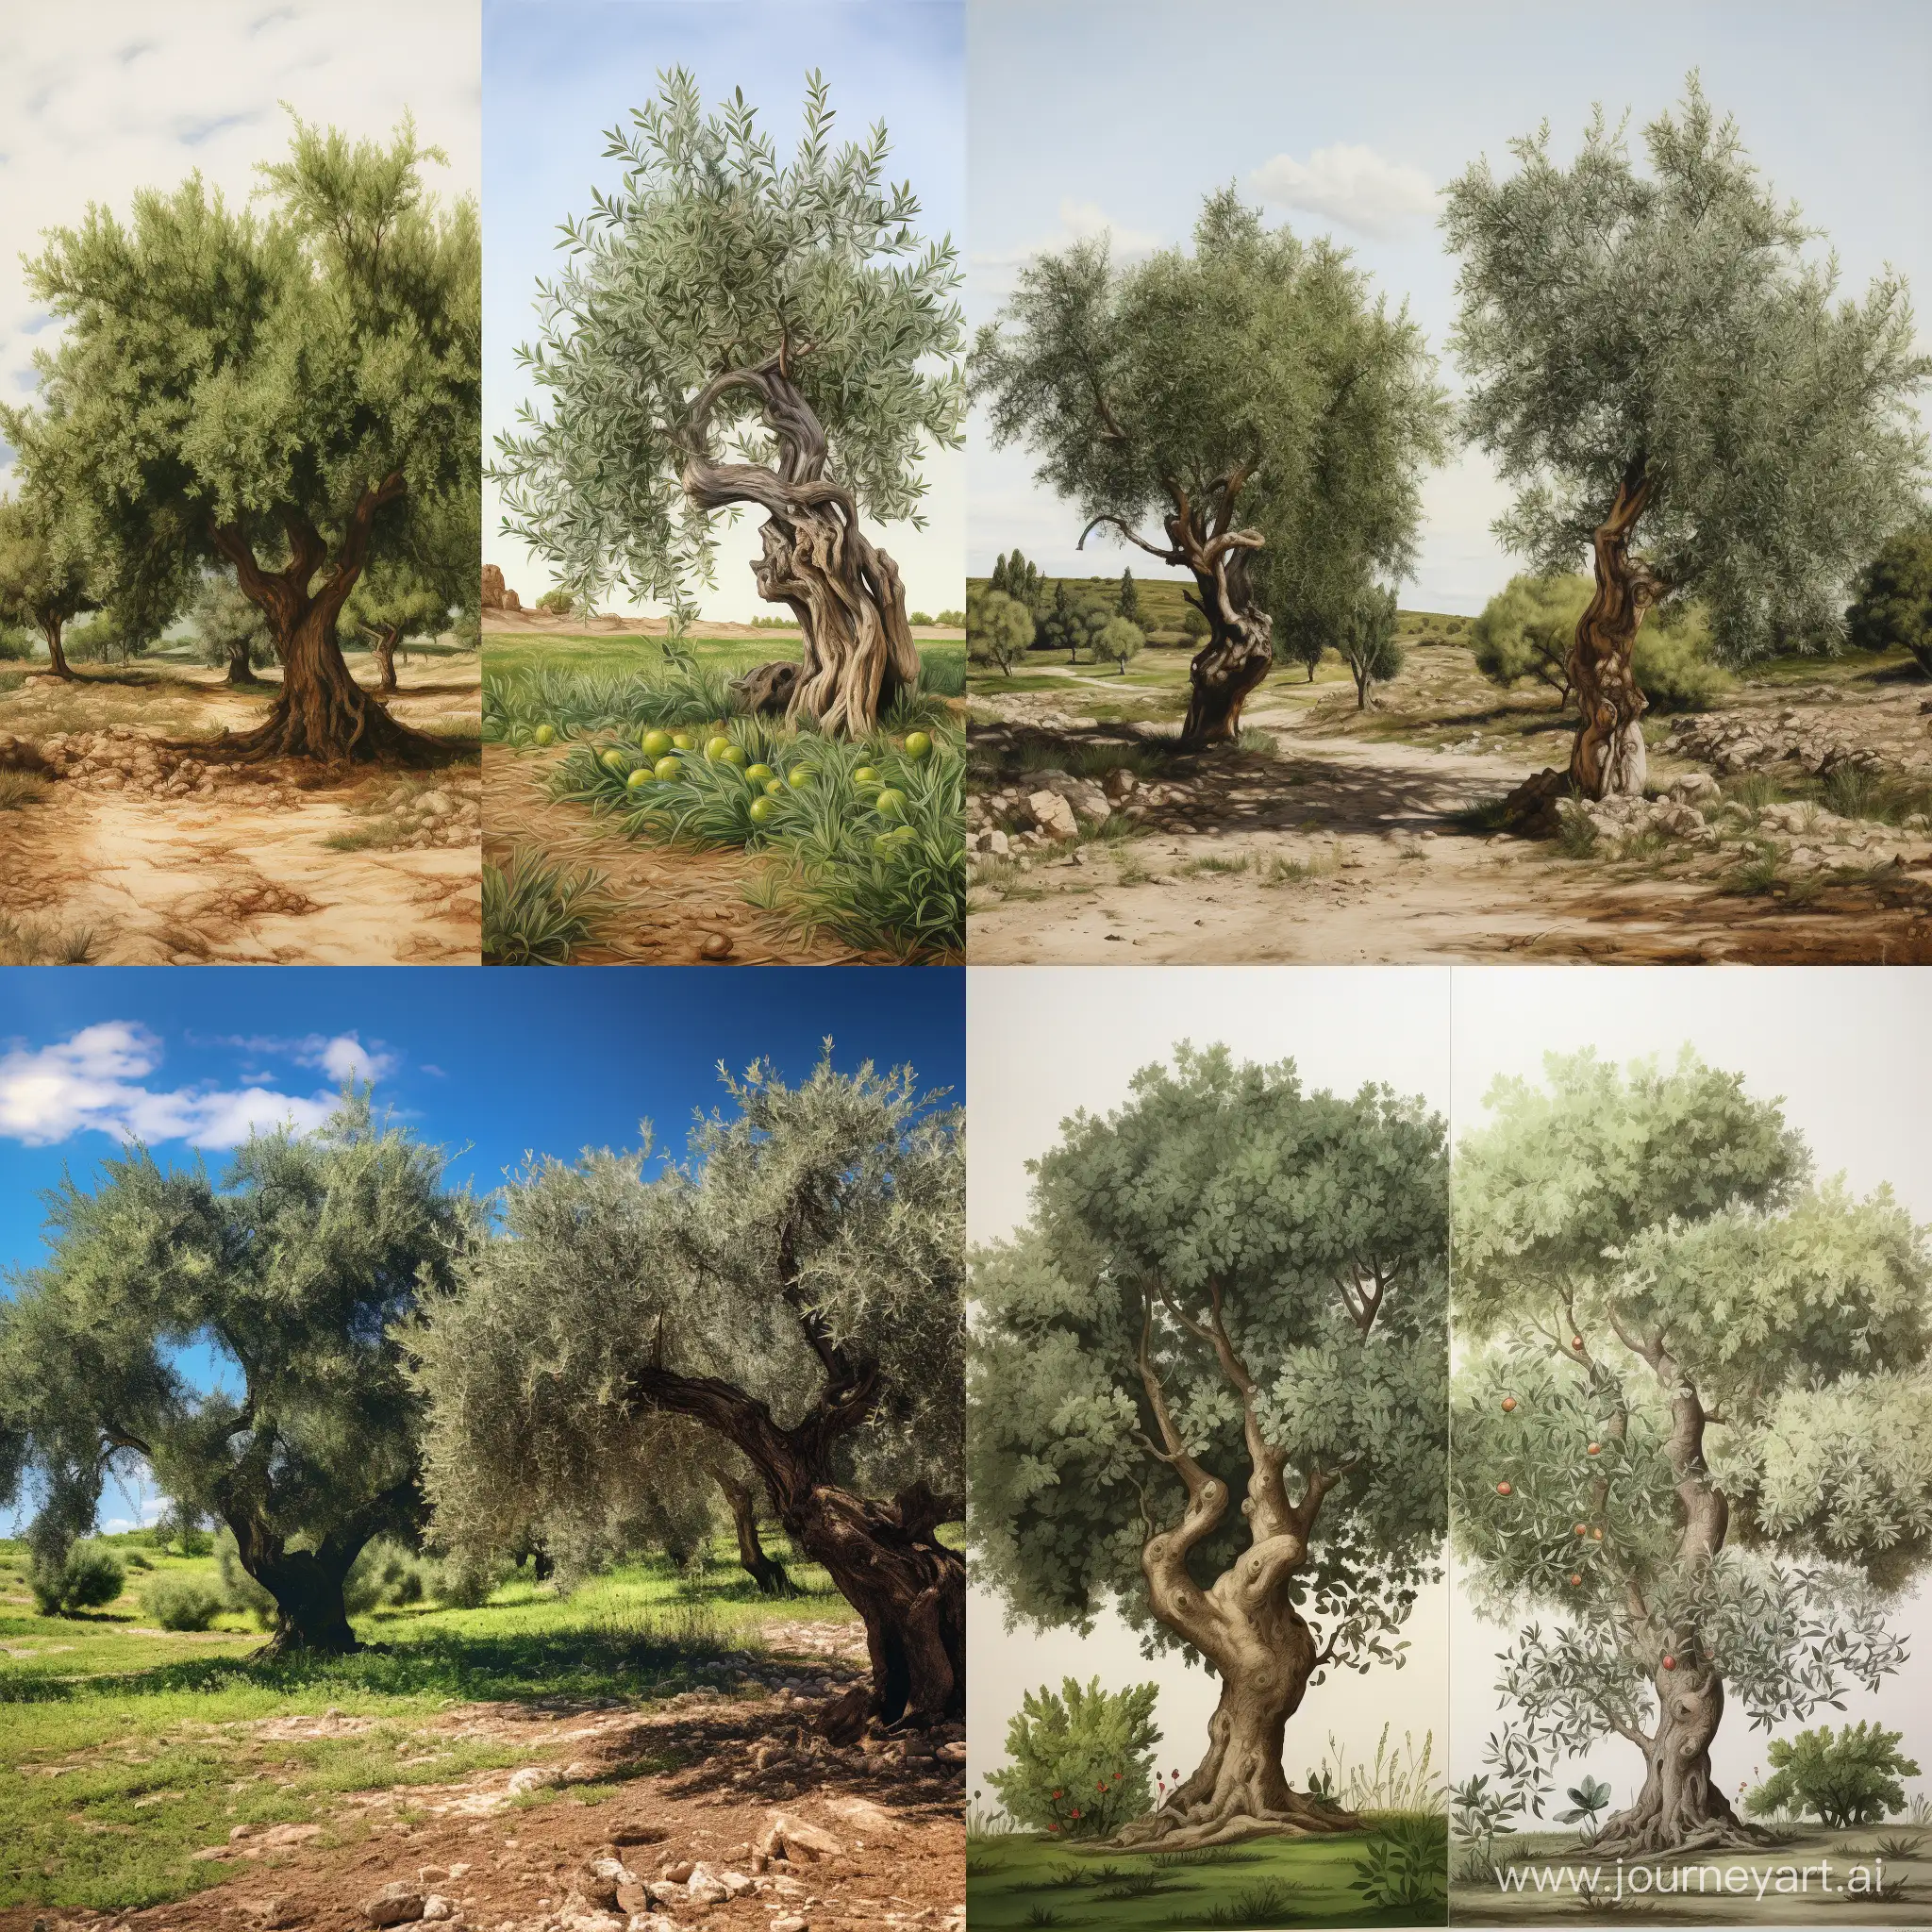 Links einen Olivenbaum und rechts grüne Fläche